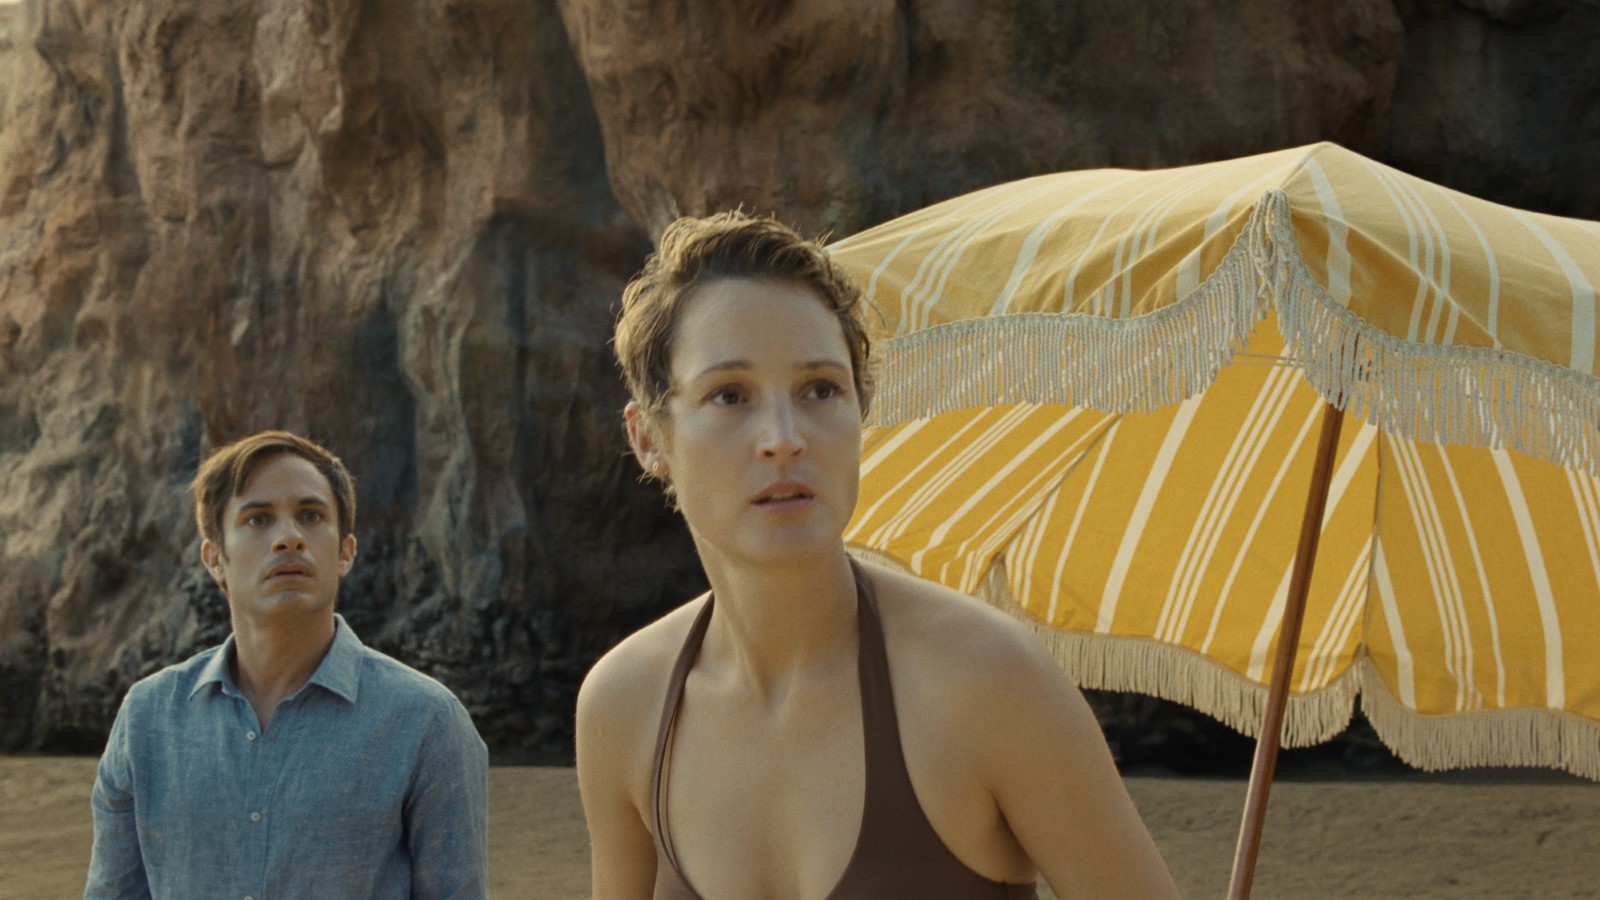 Cena do filme Tempo exibe um casal numa praia. Ambos são brancos. O homem veste uma camisa azul e a mulher usa um biquíni marrom. No lado direito, vemos um guarda-sol amarelo. 